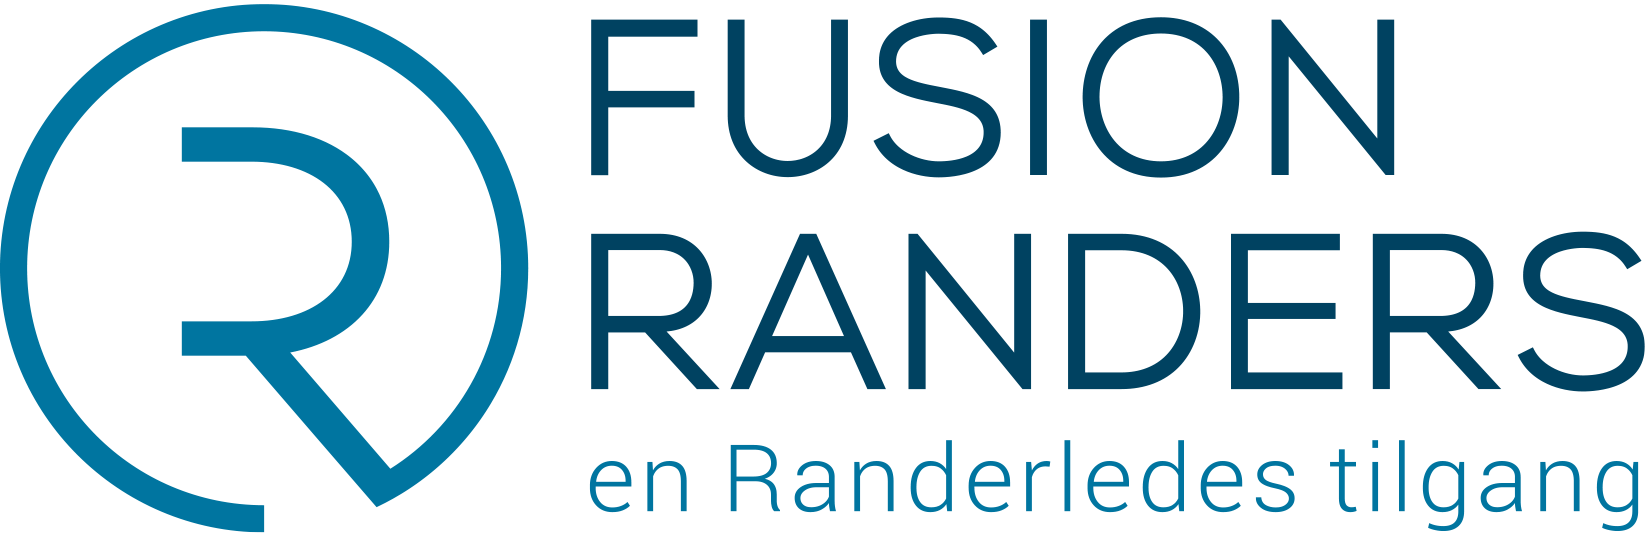 Fusion Randers